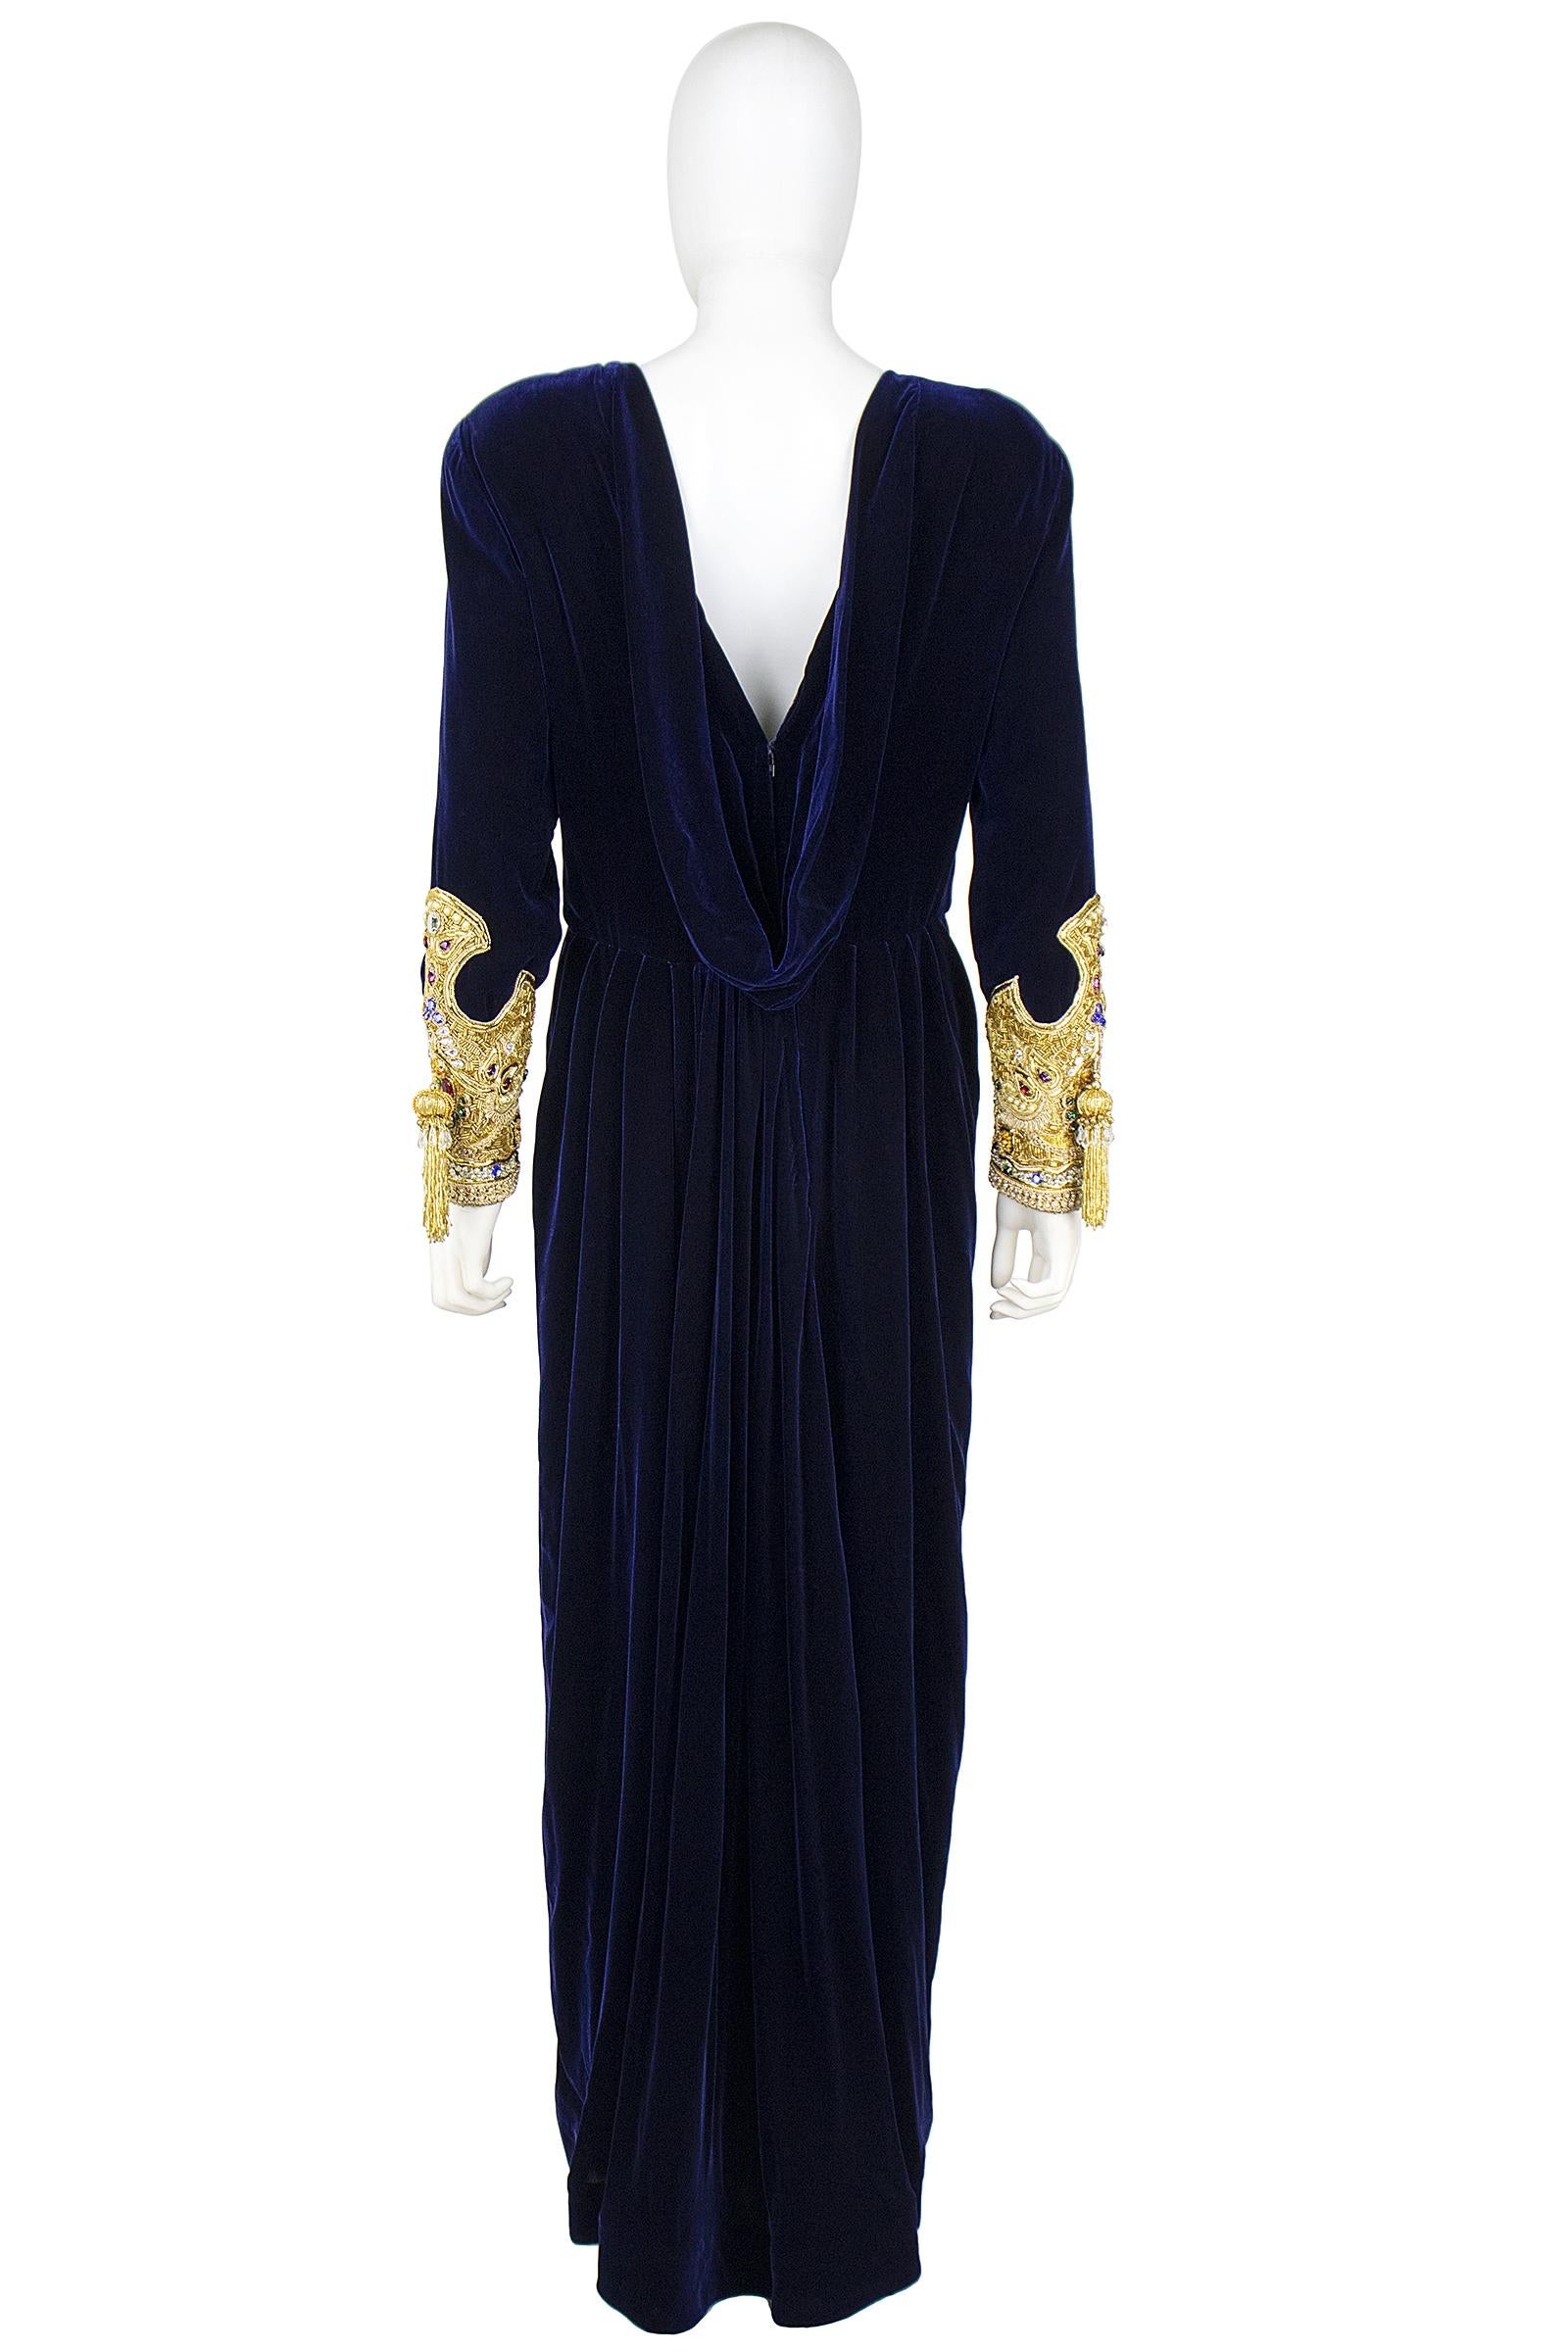 1990s Oscar De La Renta Blue Velvet Dress with Decadent Embellished Sleeves 1